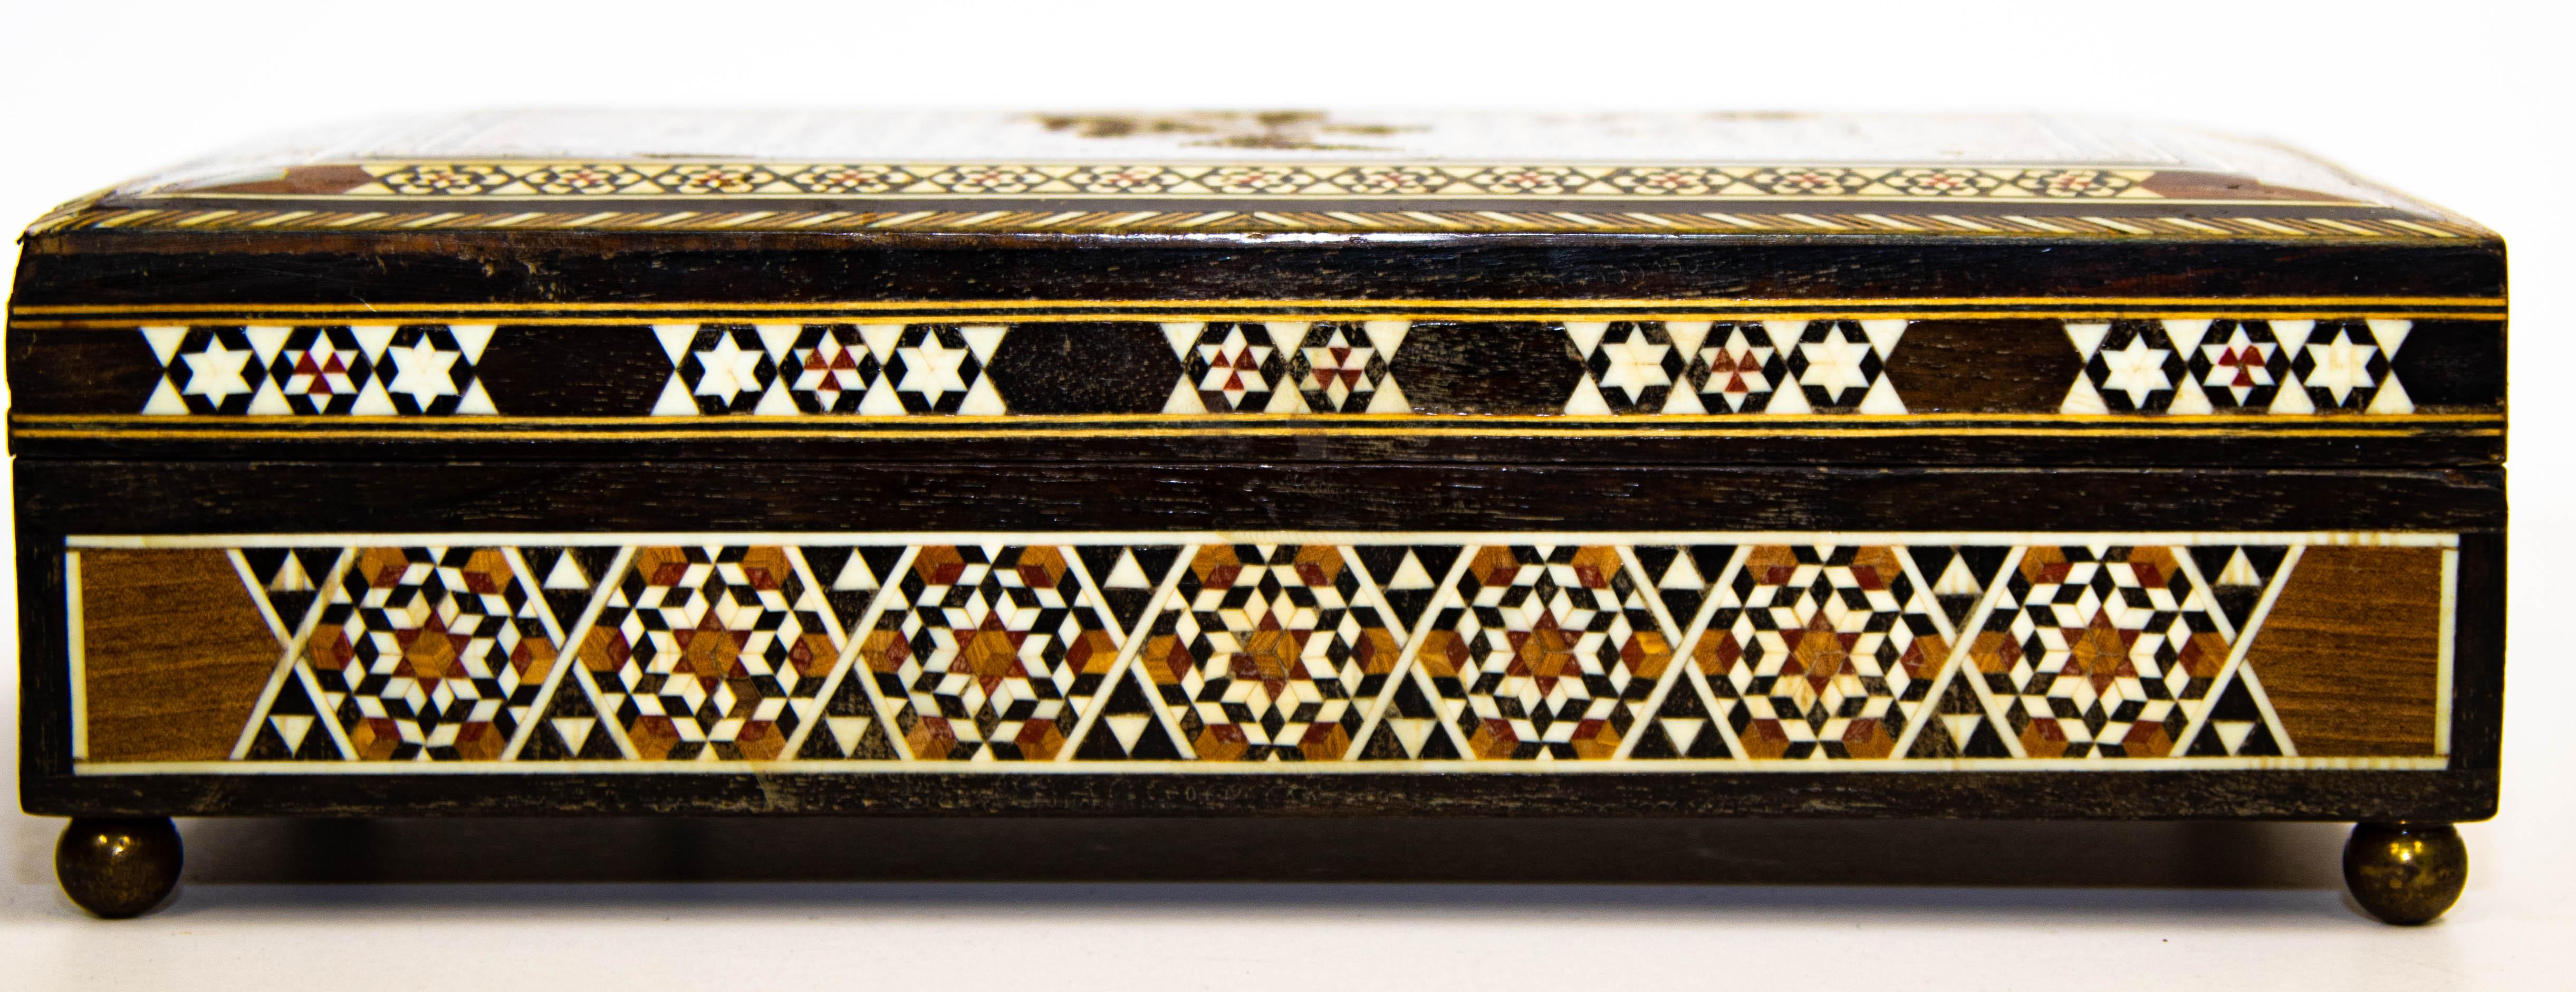 Spanish Moorish Inlaid Marquetry Jewelry Music Box 1